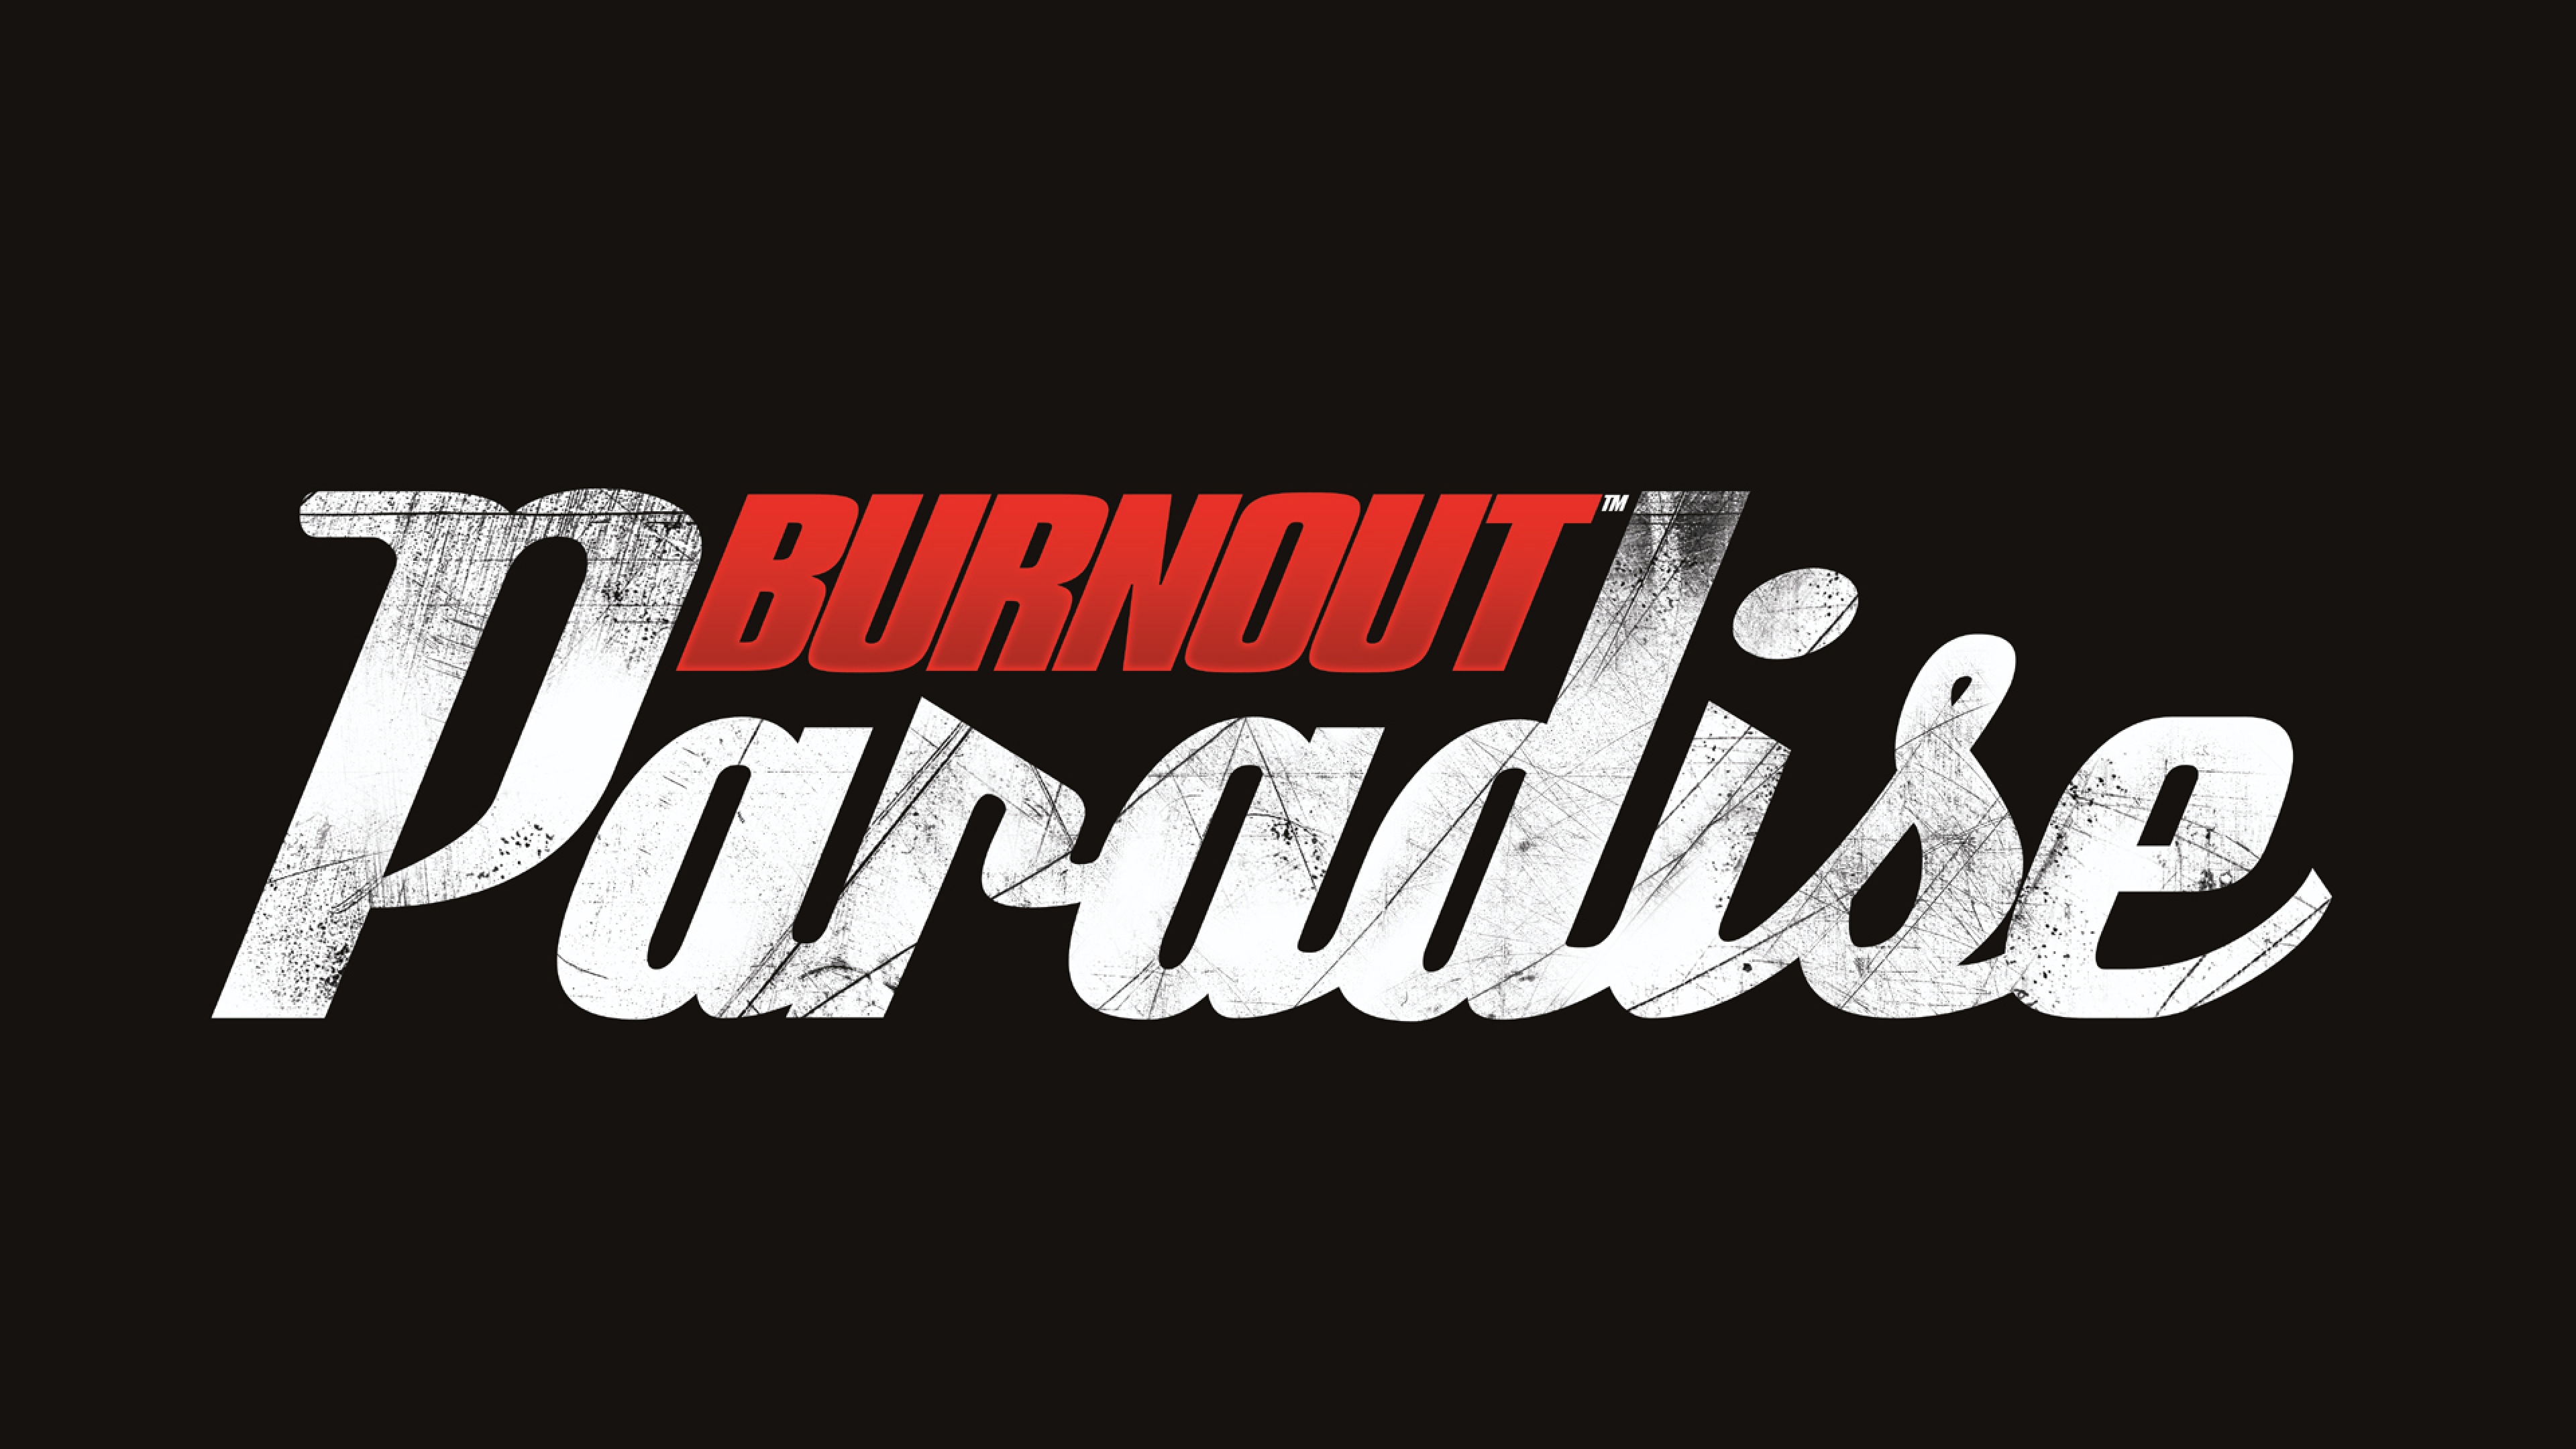 Download Wallpaper 3840x2160 Burnout paradise, Criterion games ...